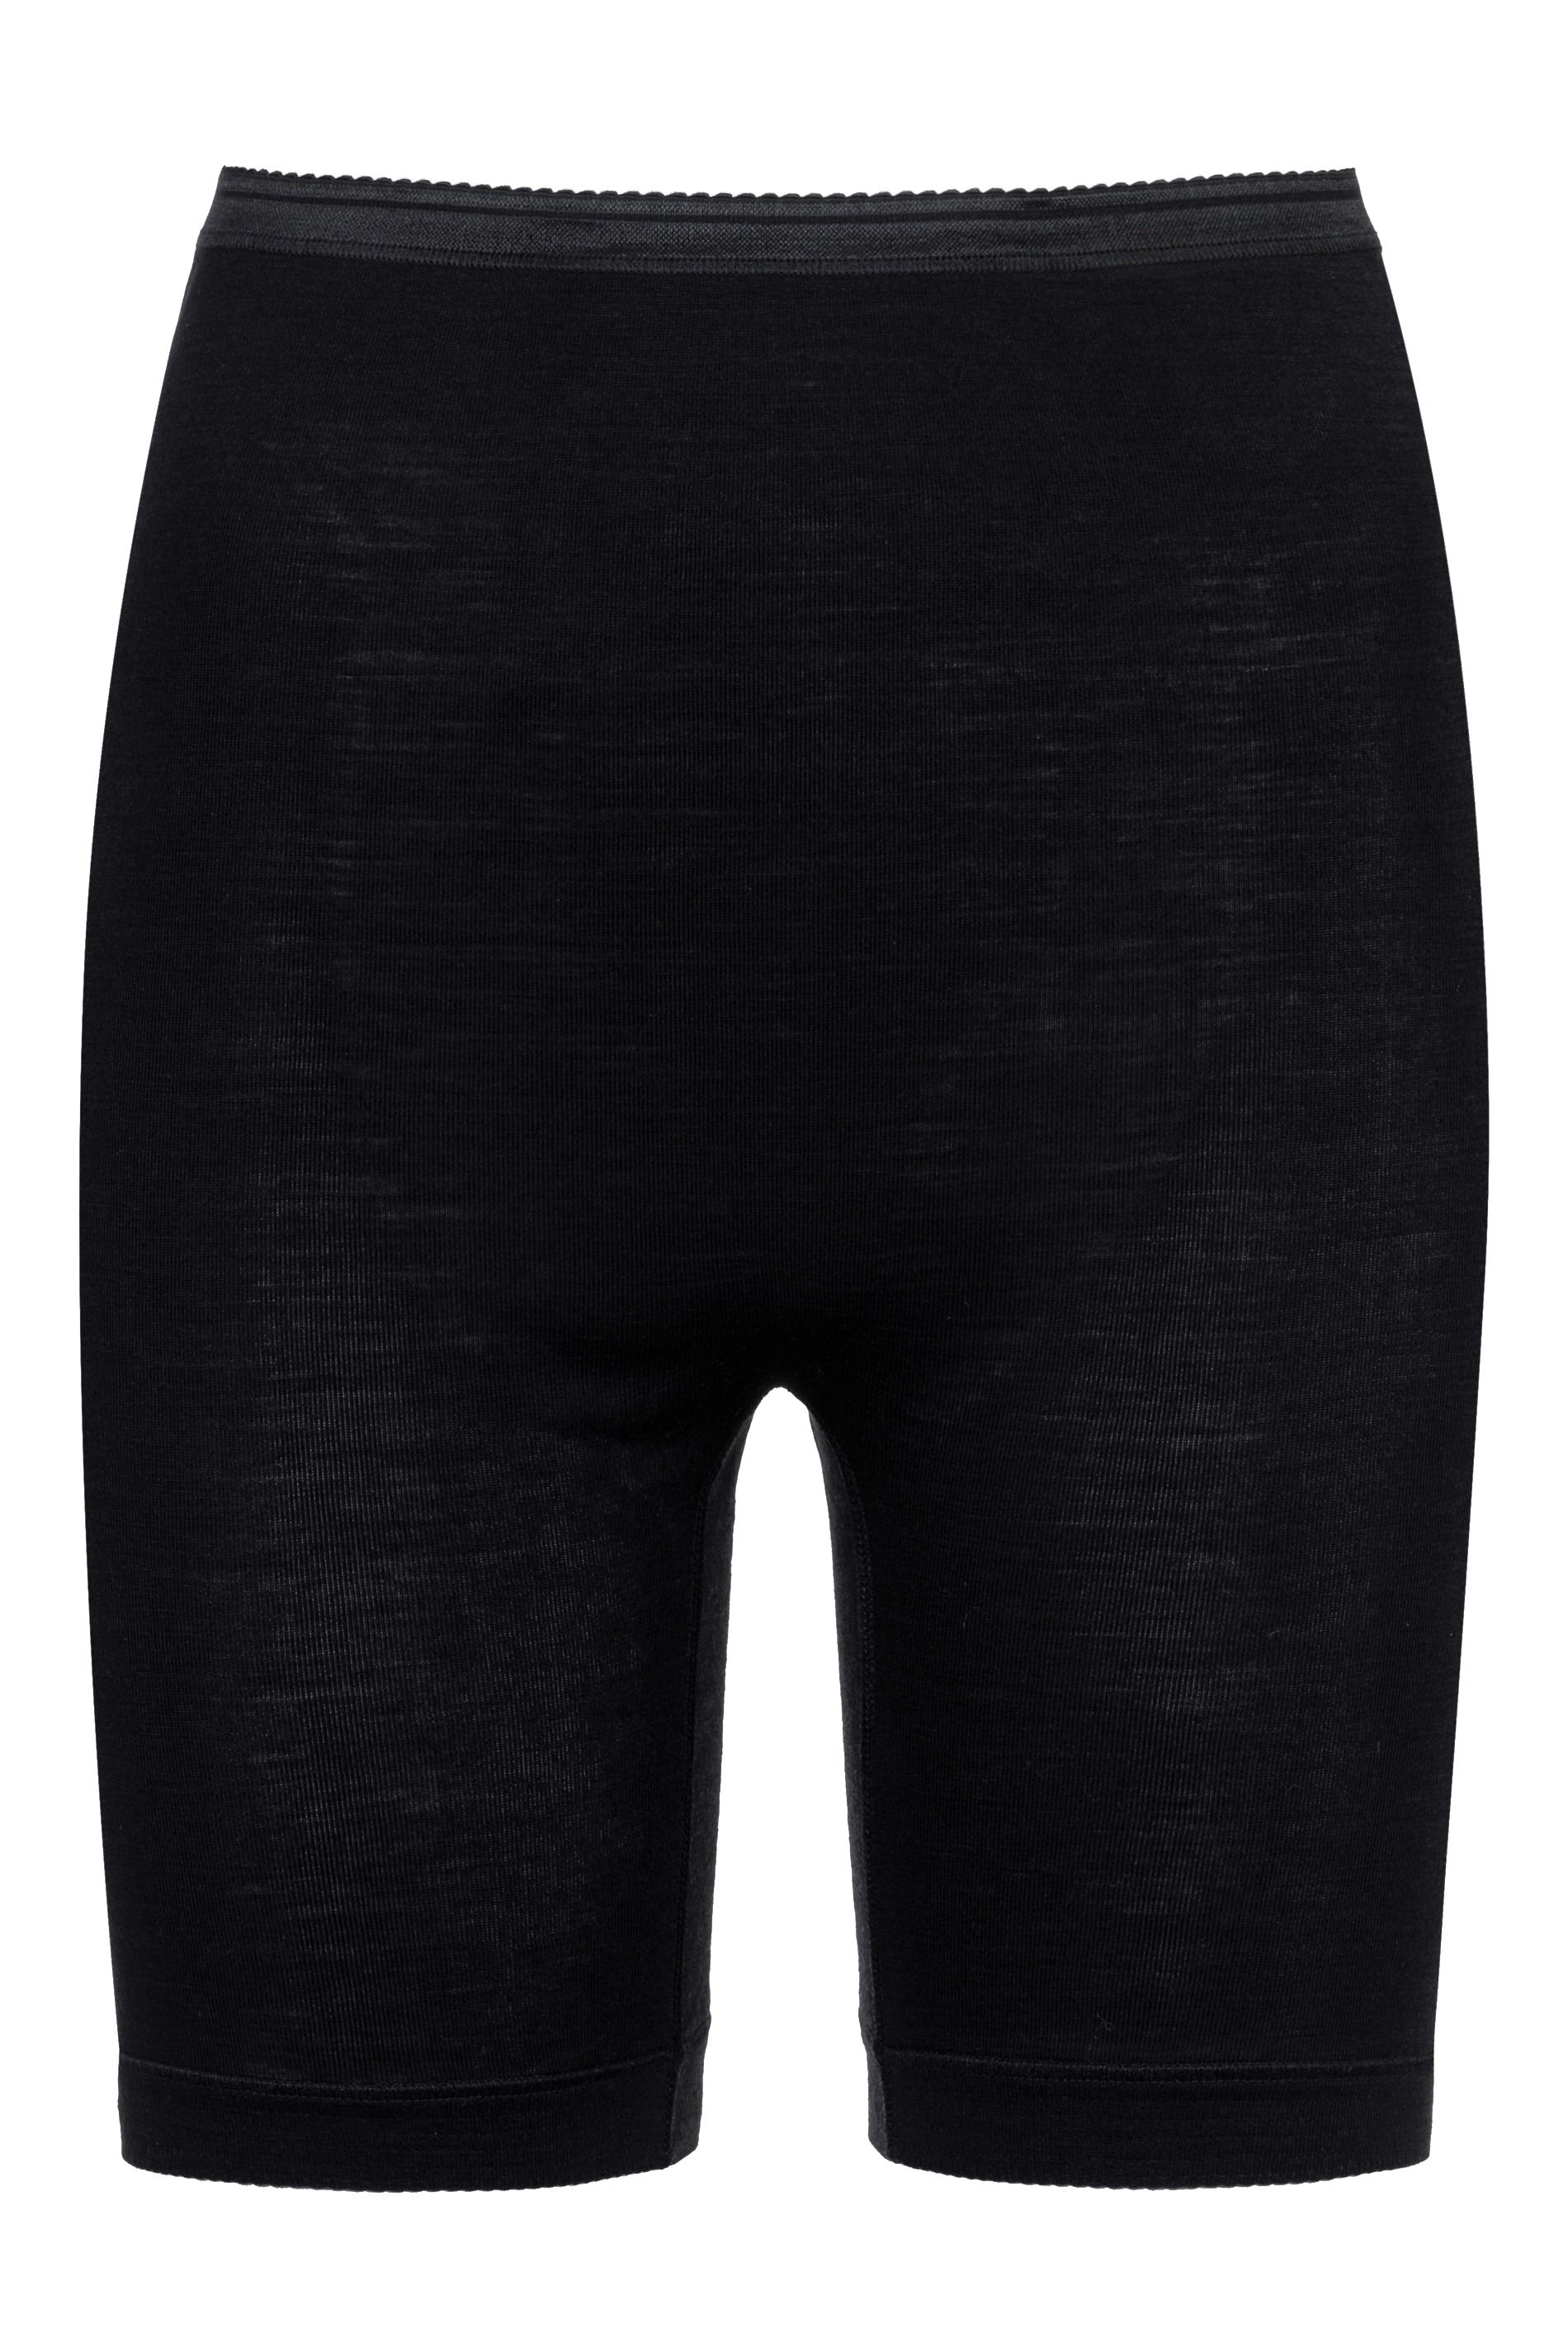 Long pants Black Serie Exquisite Cut Out | mey®